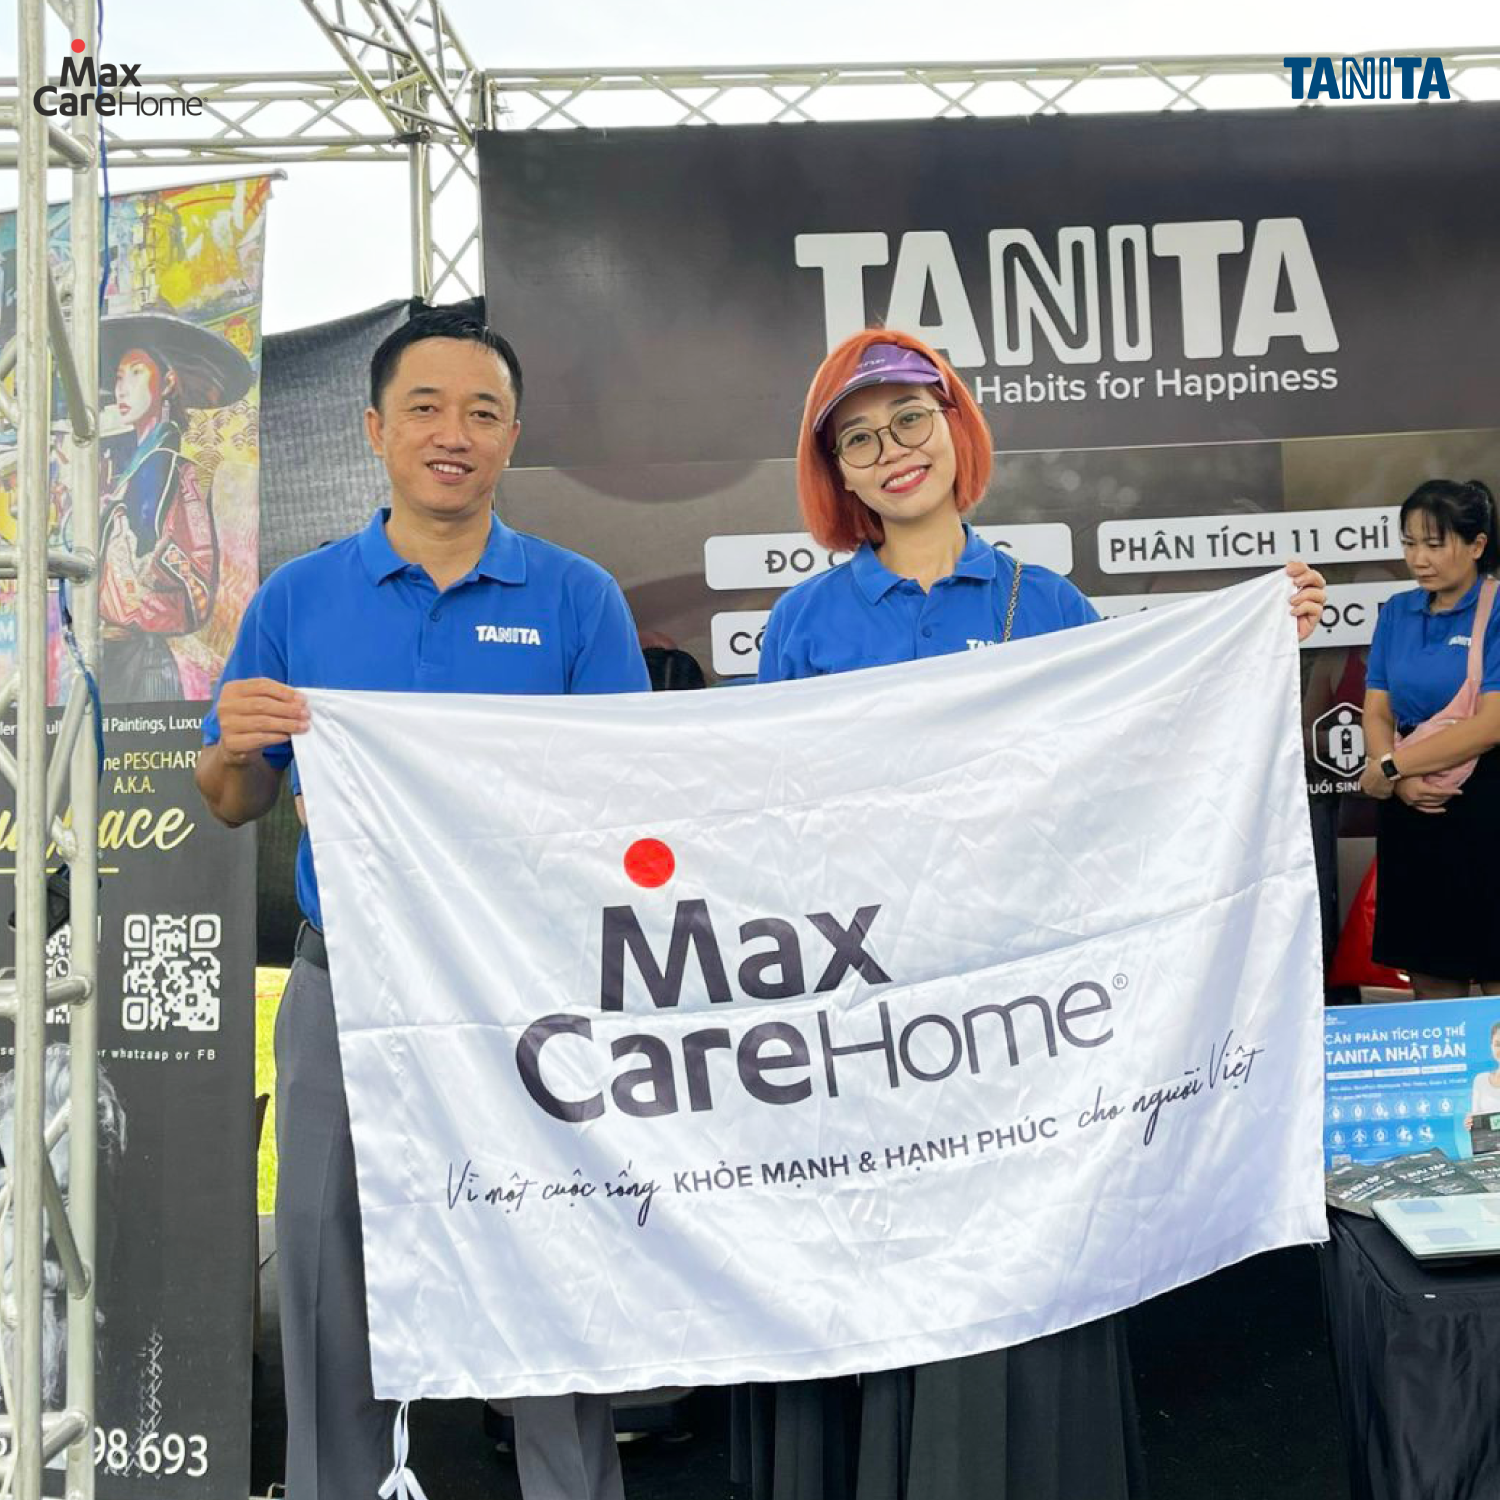 Maxcare Home - Vì một cuộc sống khỏe mạnh và hạnh phúc cho người Việt